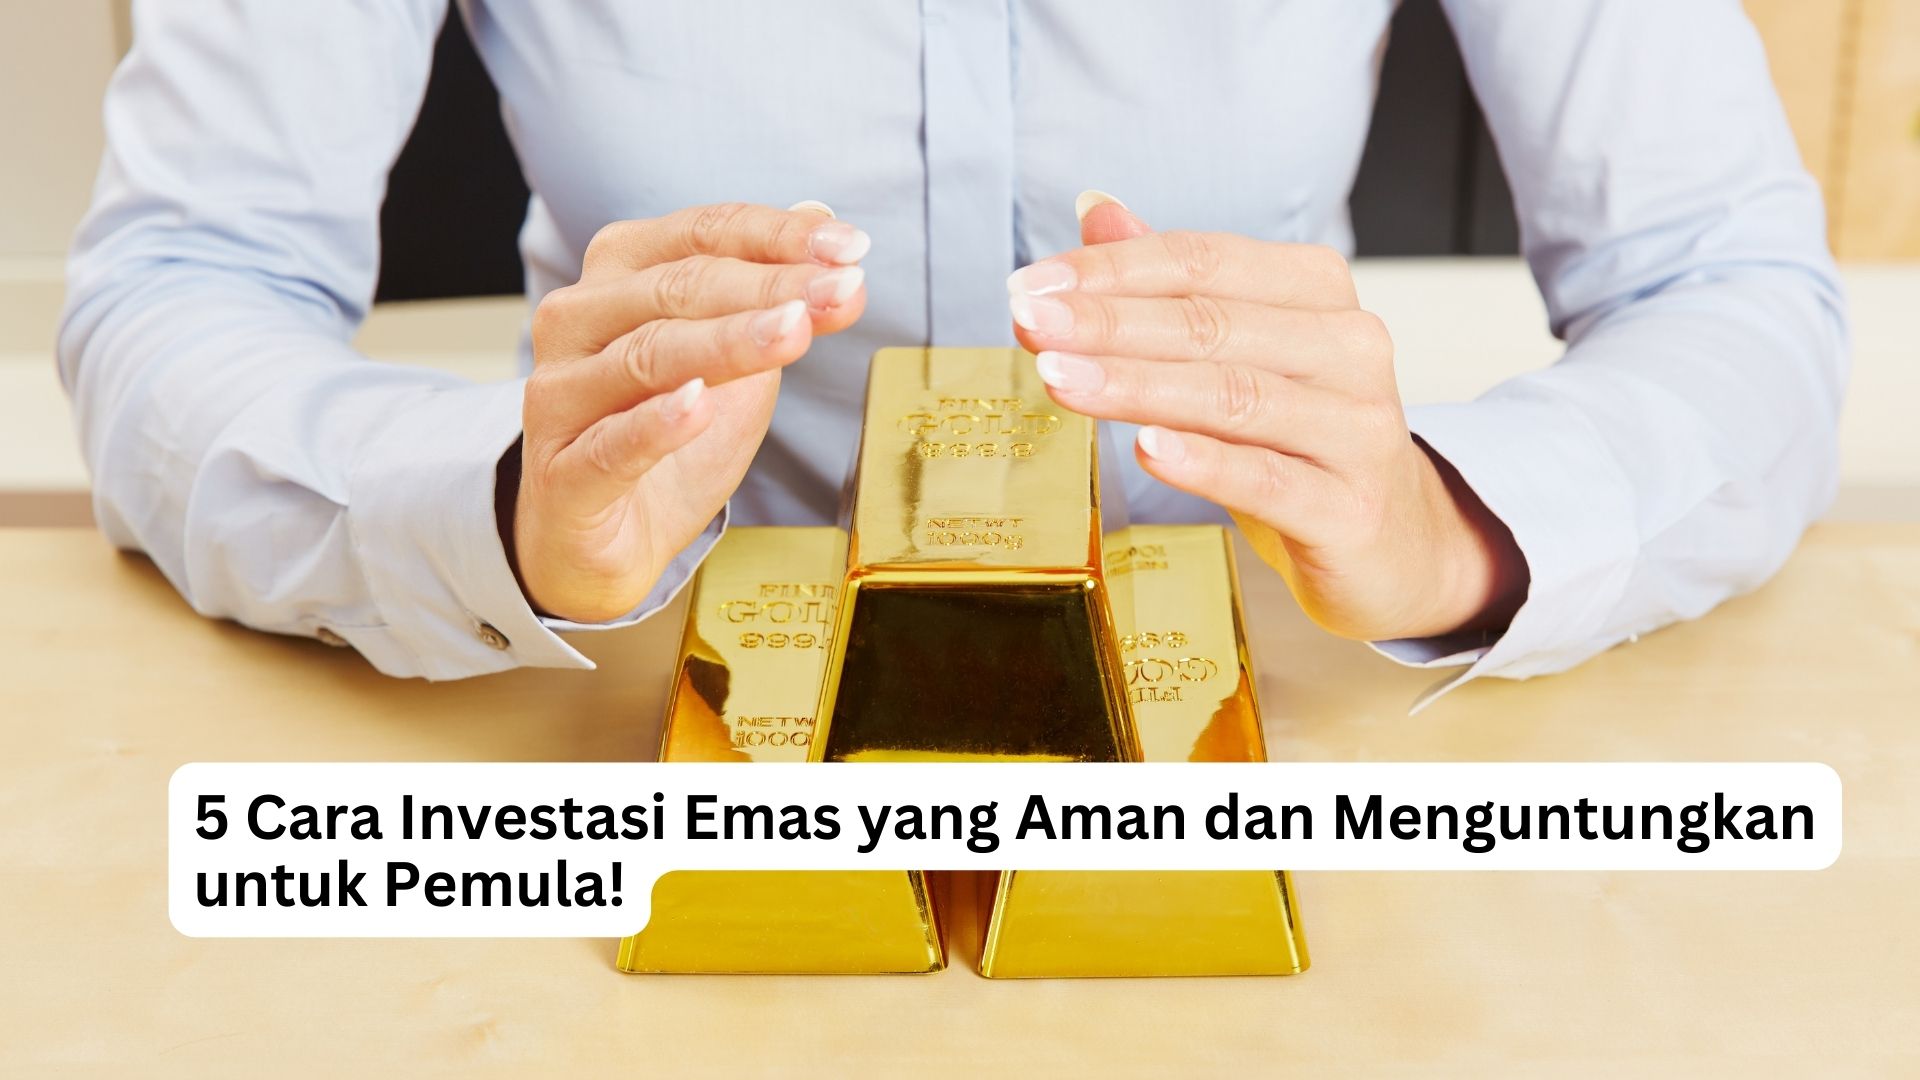 You are currently viewing 5 Cara Investasi Emas yang Aman dan Menguntungkan untuk Pemula!